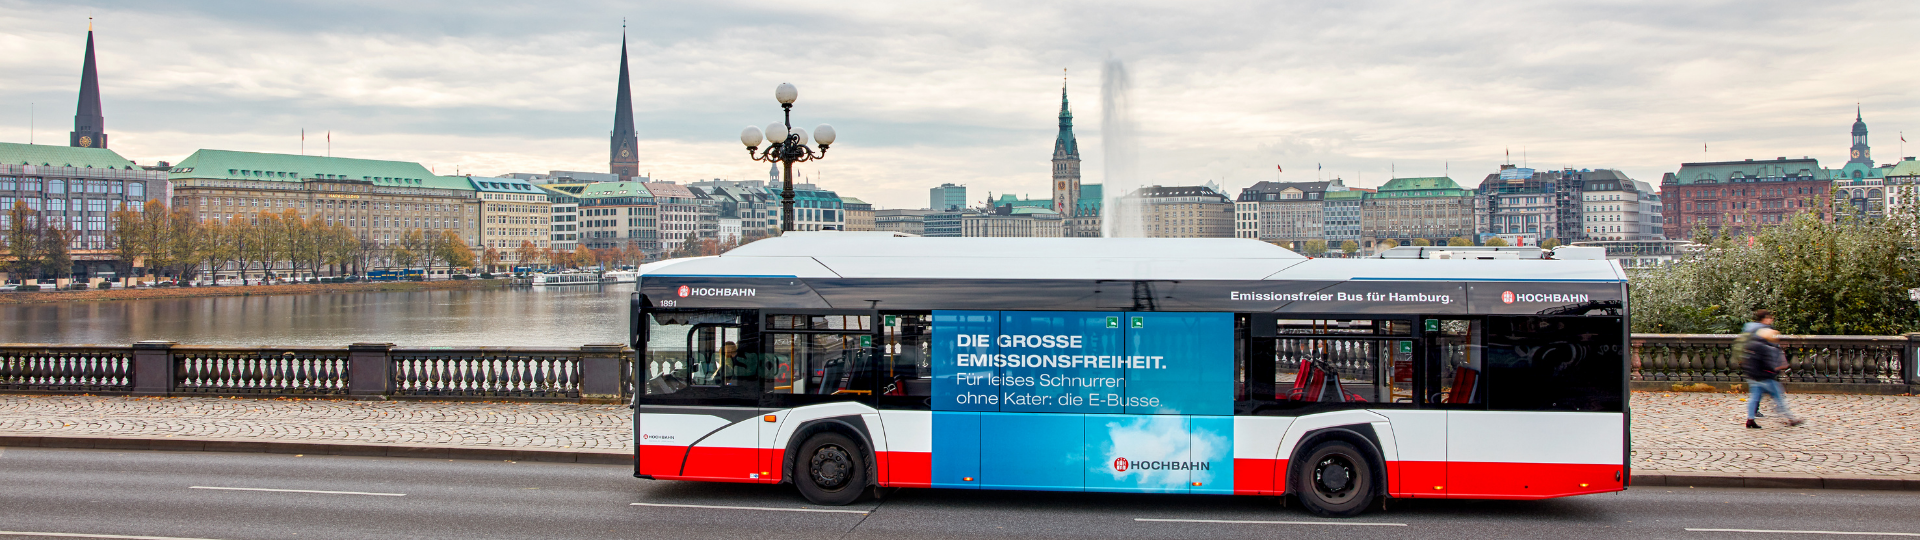 Solaris otrzymuje pierwsze zamówienie w ramach przetargu na 530 e-busów do Hamburga